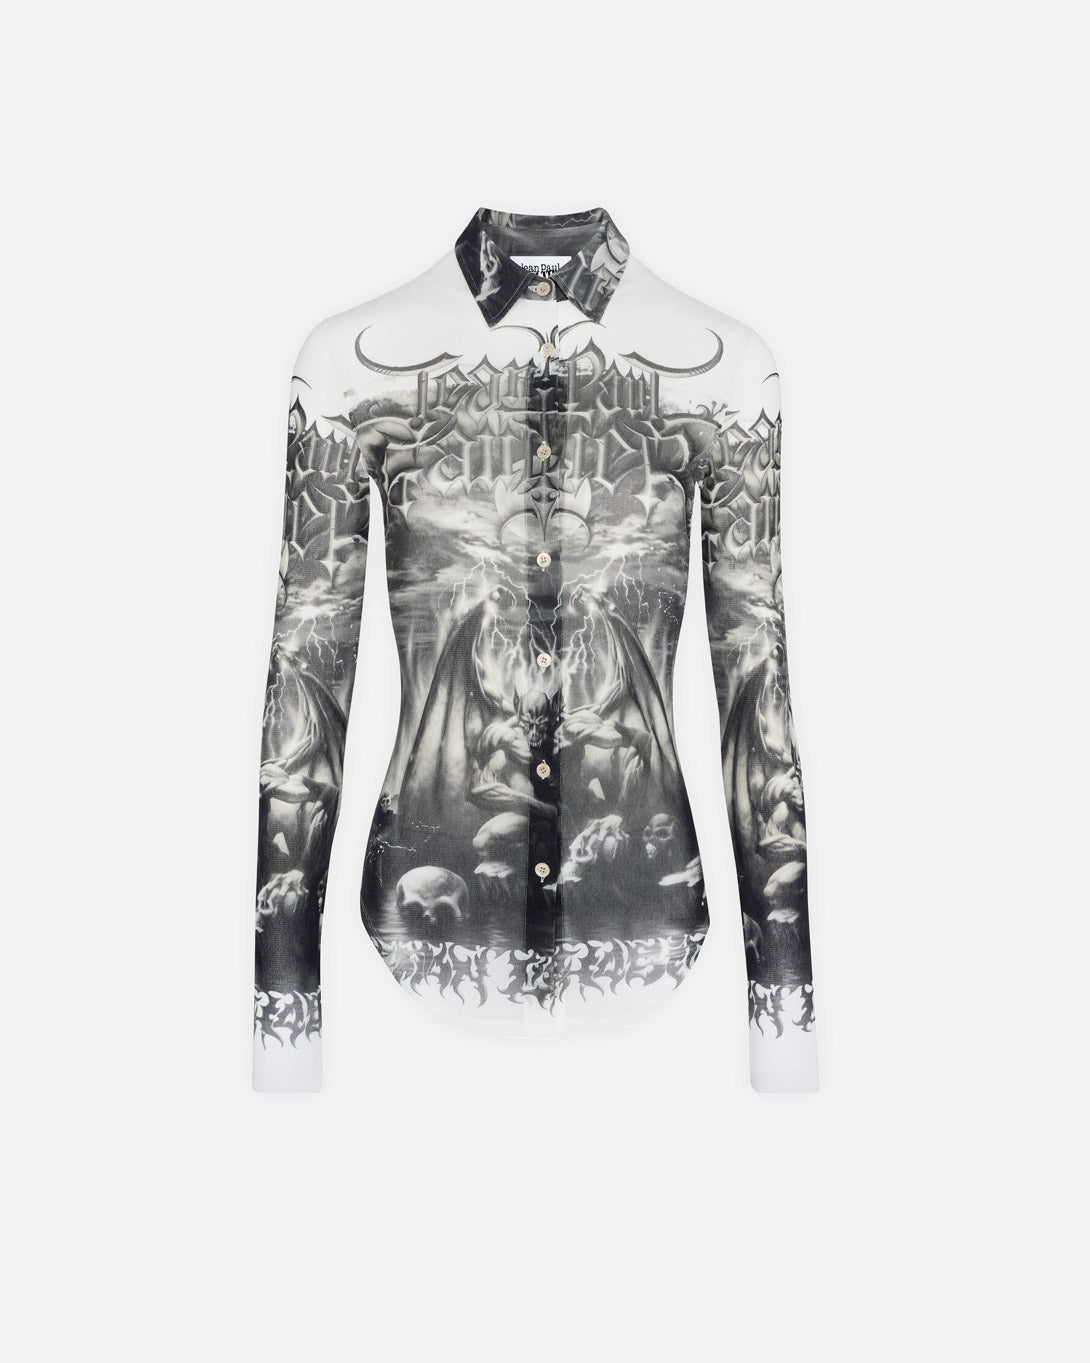 Mesh Long Sleeves Shirt Printed "Diablo" - Tops - Jean Paul Gaultier - Elevastor